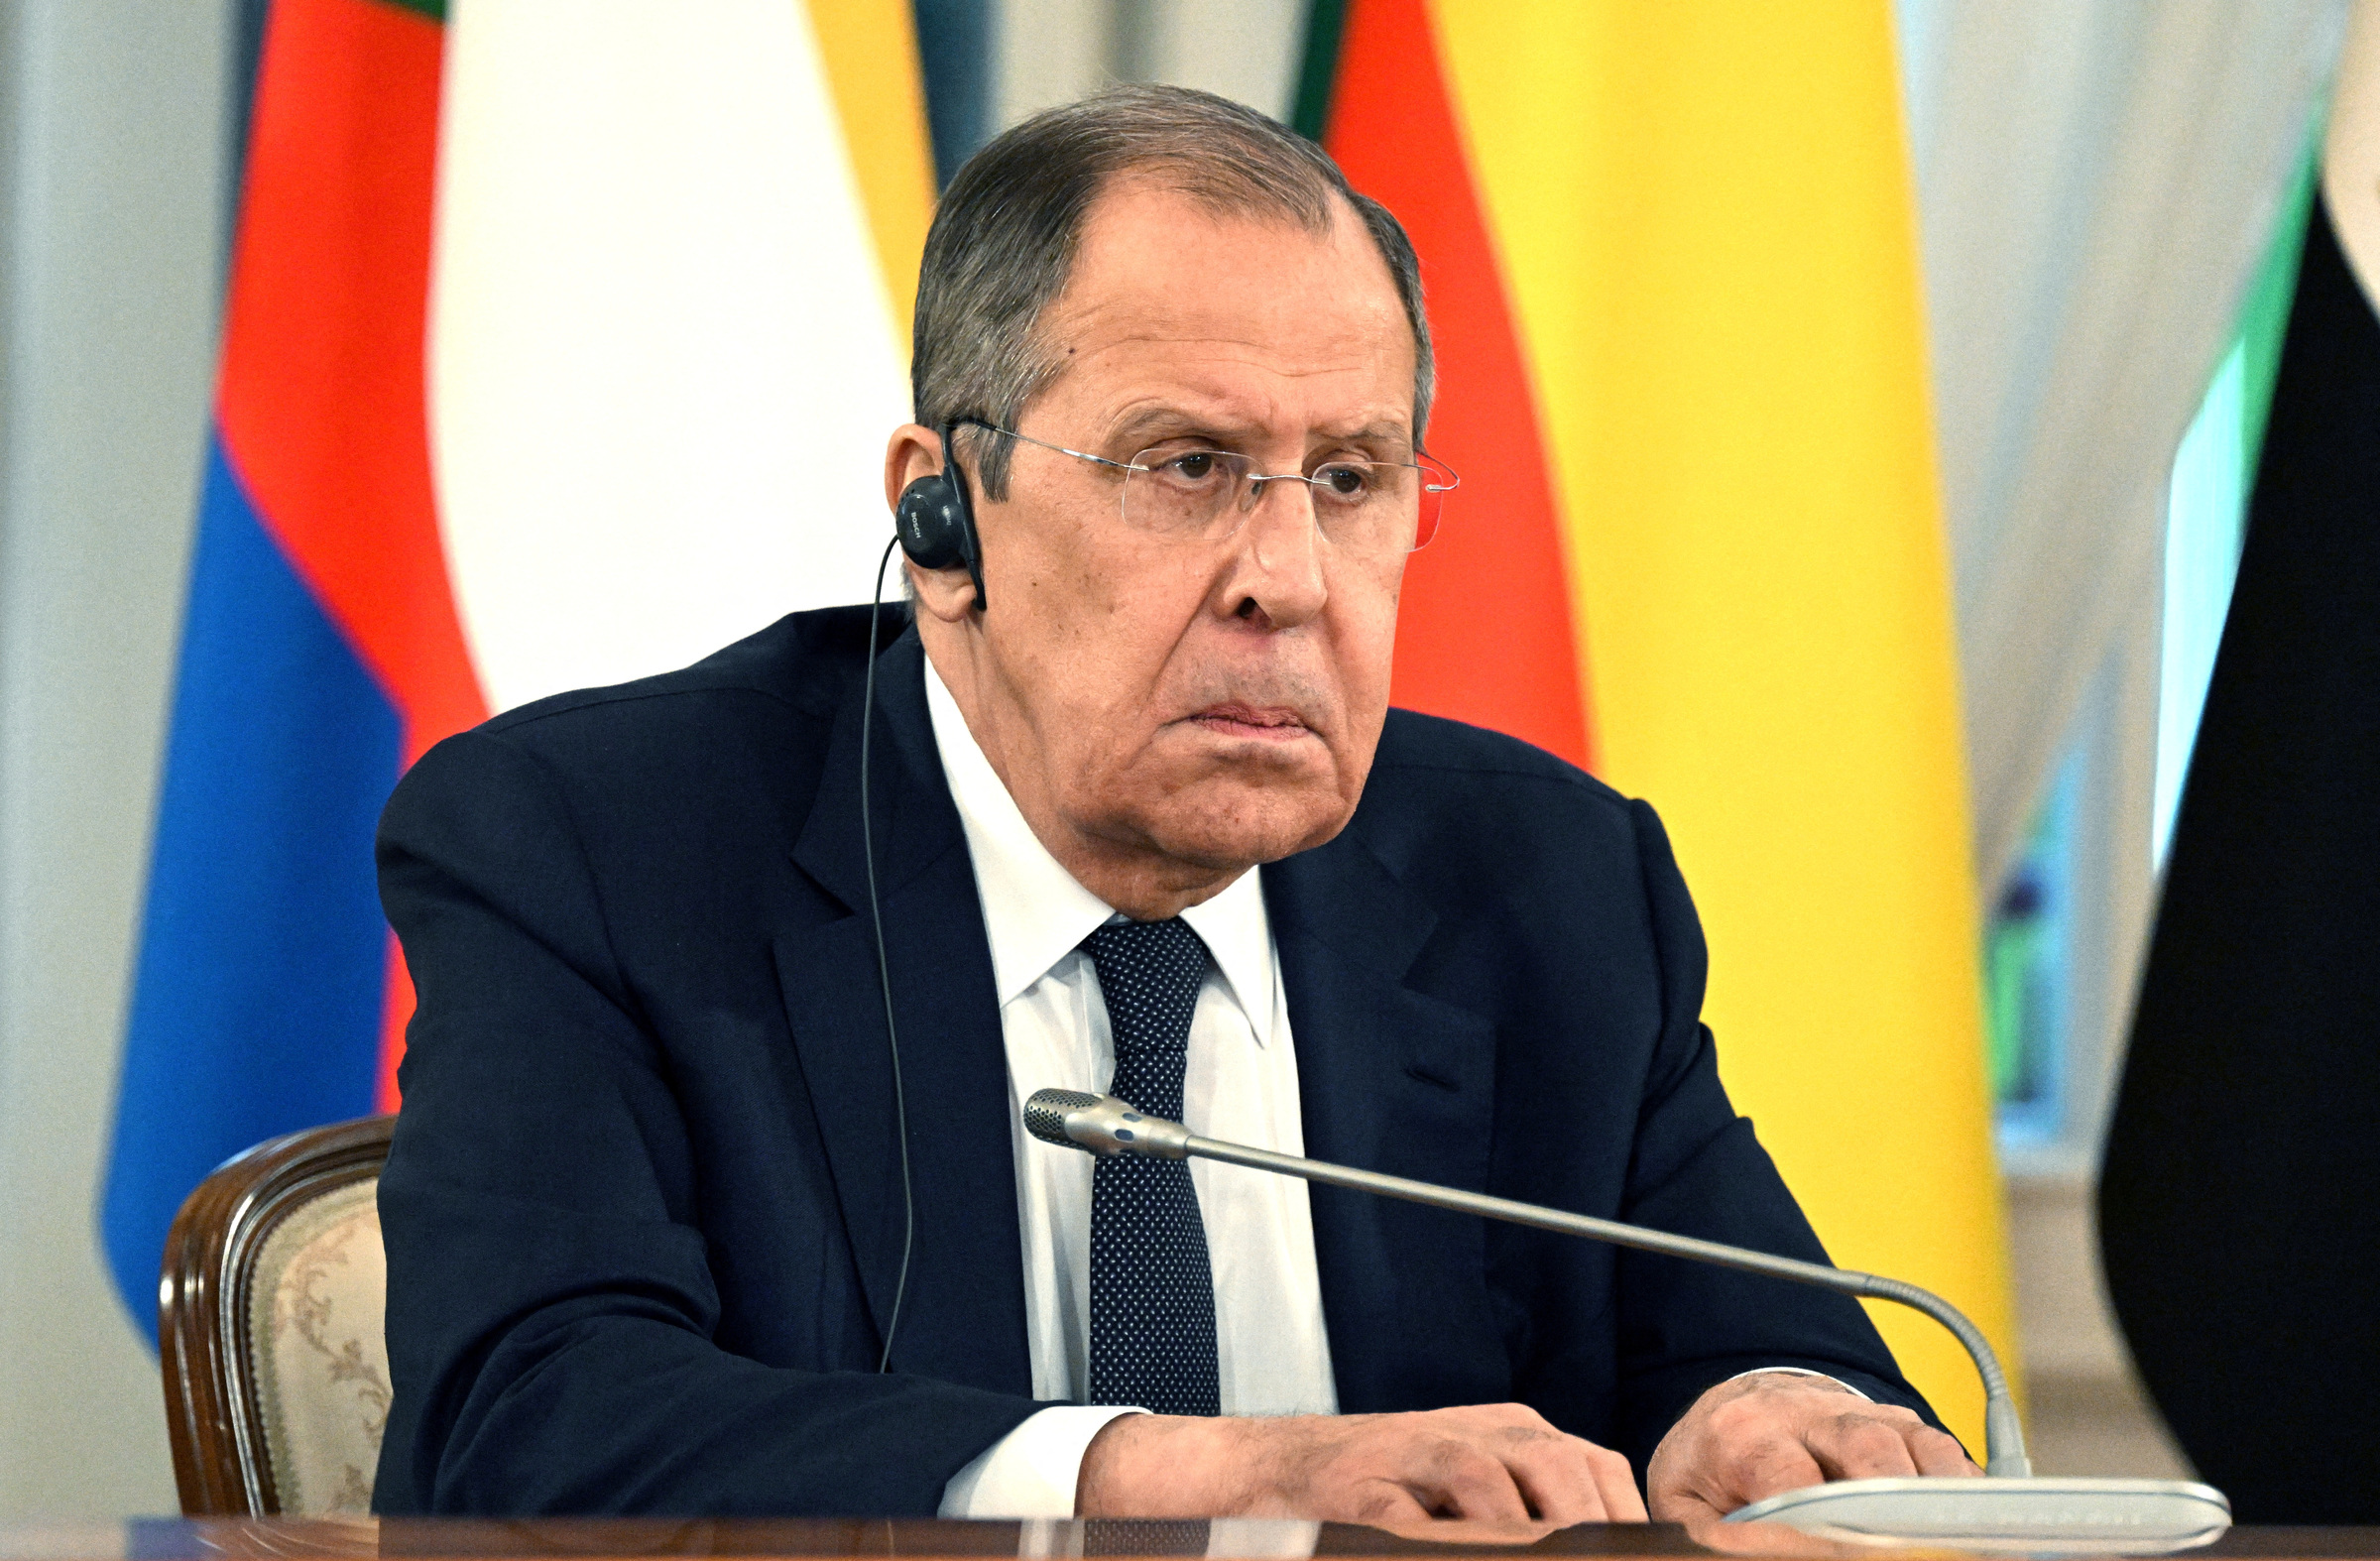 Ngoại trưởng Nga Sergei Lavrov tại cuộc họp ở St. Petersburg ngày 17/6. Ảnh: Reuters